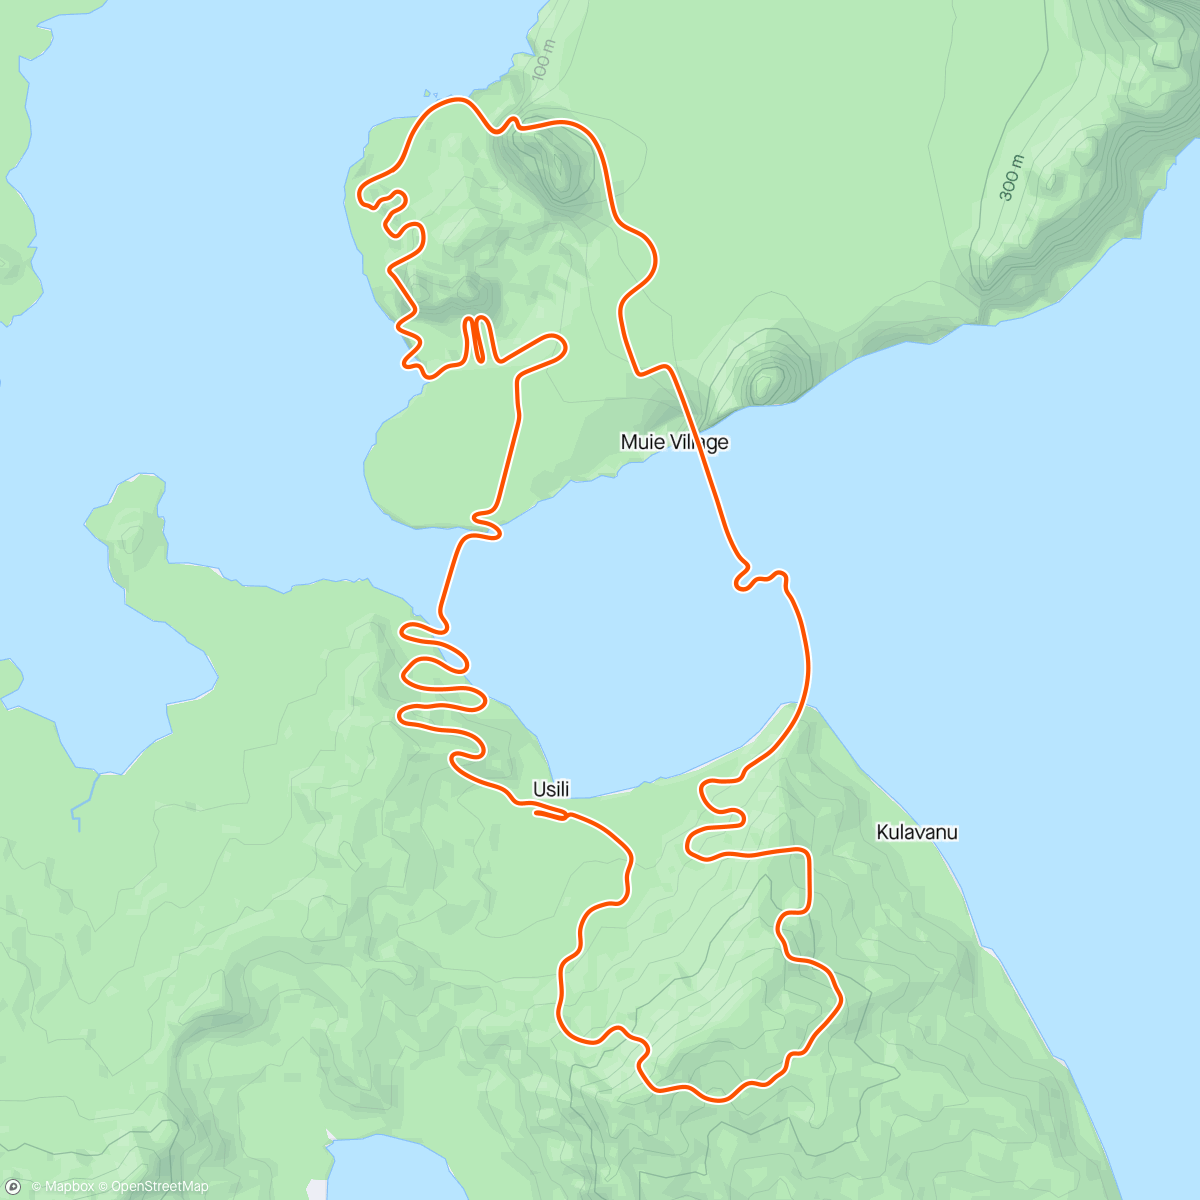 Mappa dell'attività Zwift - Mountain Route in Watopia
Old man climbing - 21 Min. All out
366 Watt bei 76 kg - 4,82 w/kg